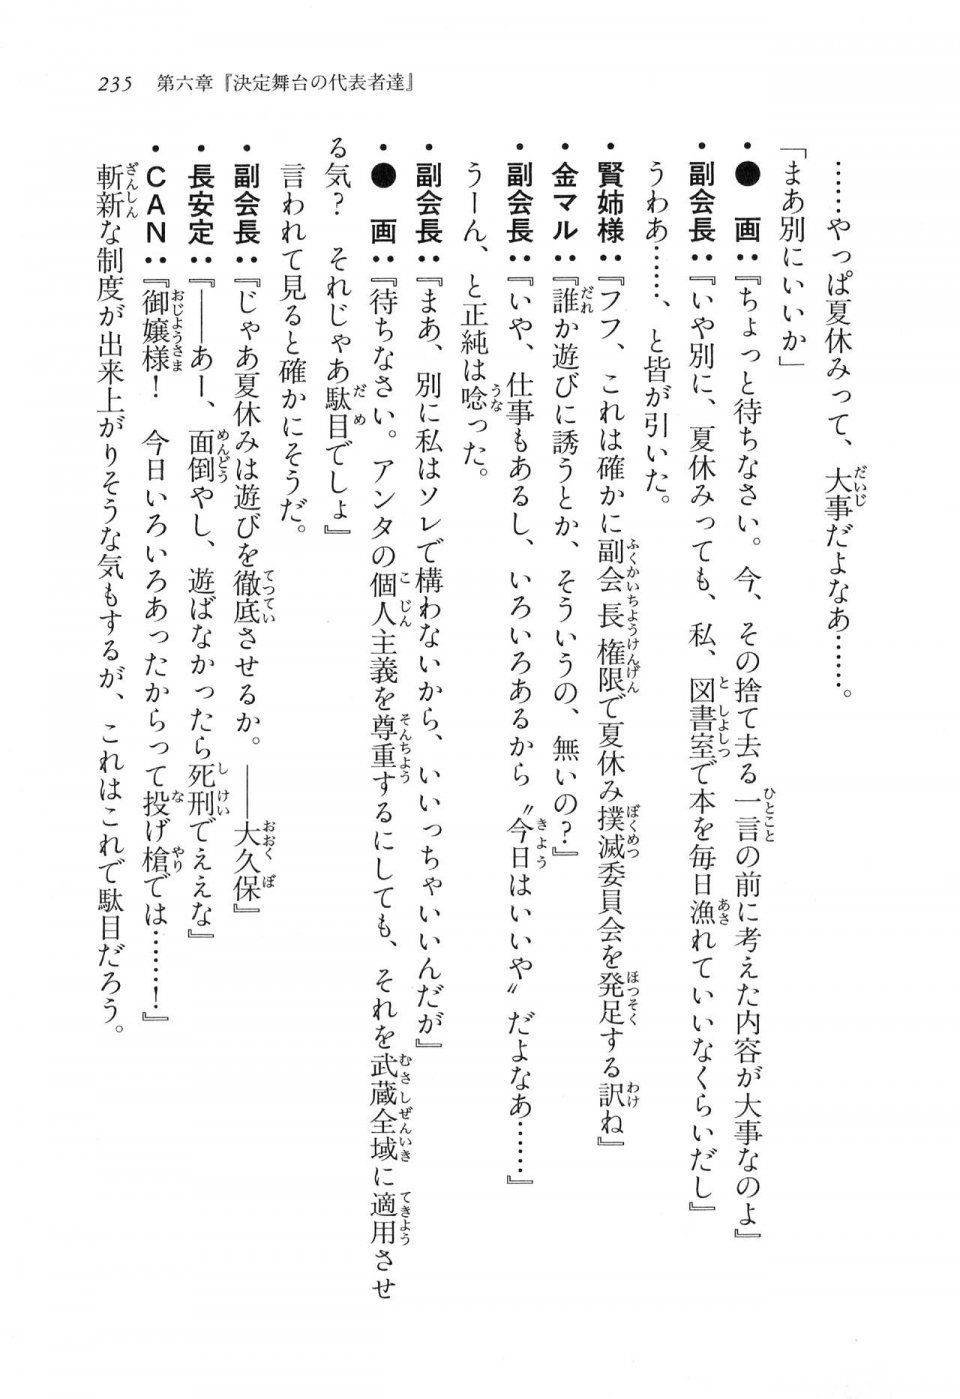 Kyoukai Senjou no Horizon LN Vol 16(7A) - Photo #235